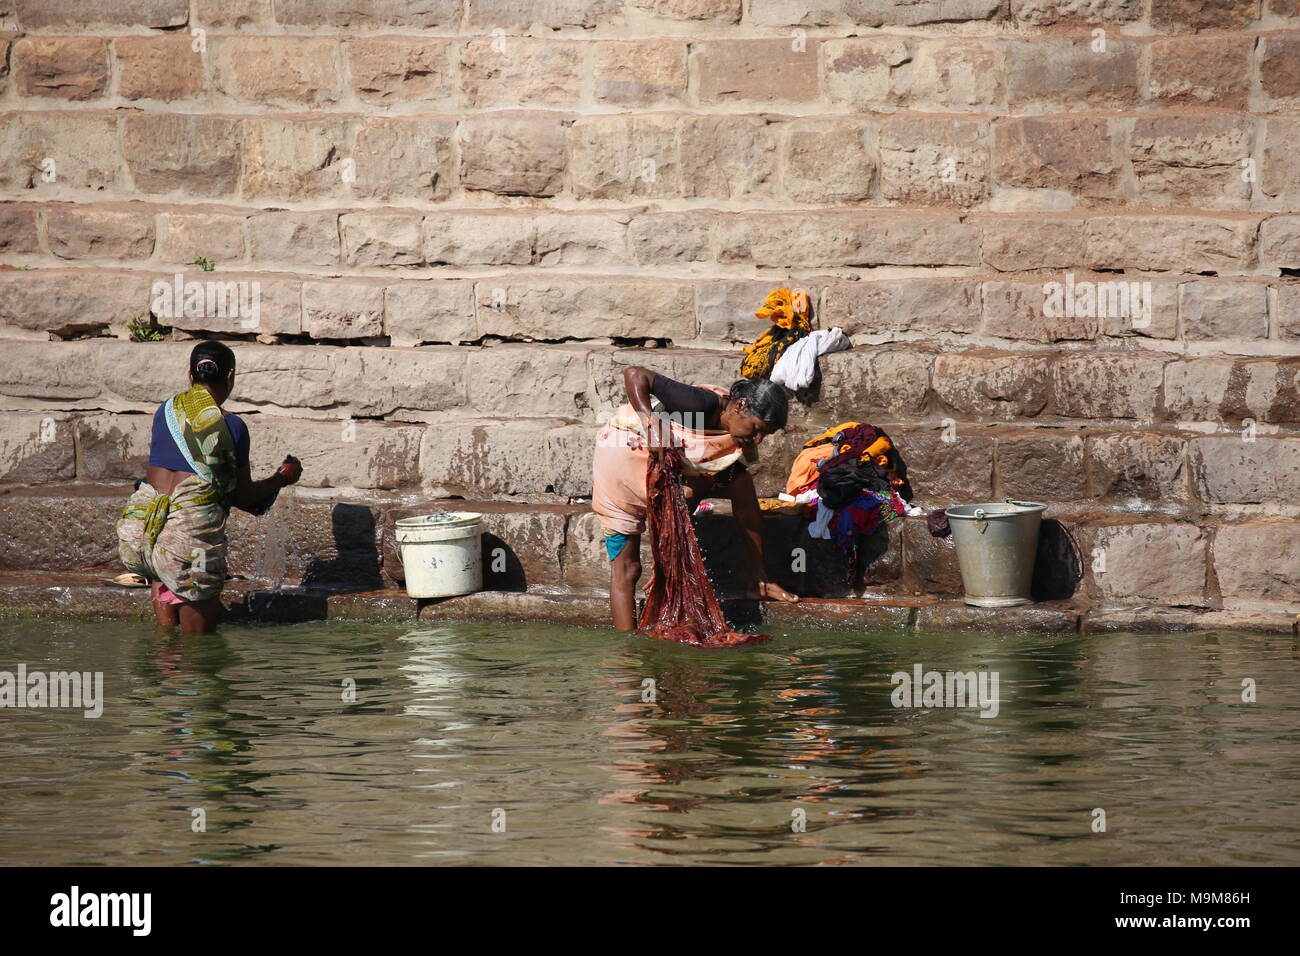 Donna indiana il lavaggio della biancheria e stoviglie sul fiume - inderin beim waschen von Kleidung und geschirr am fluss Foto Stock